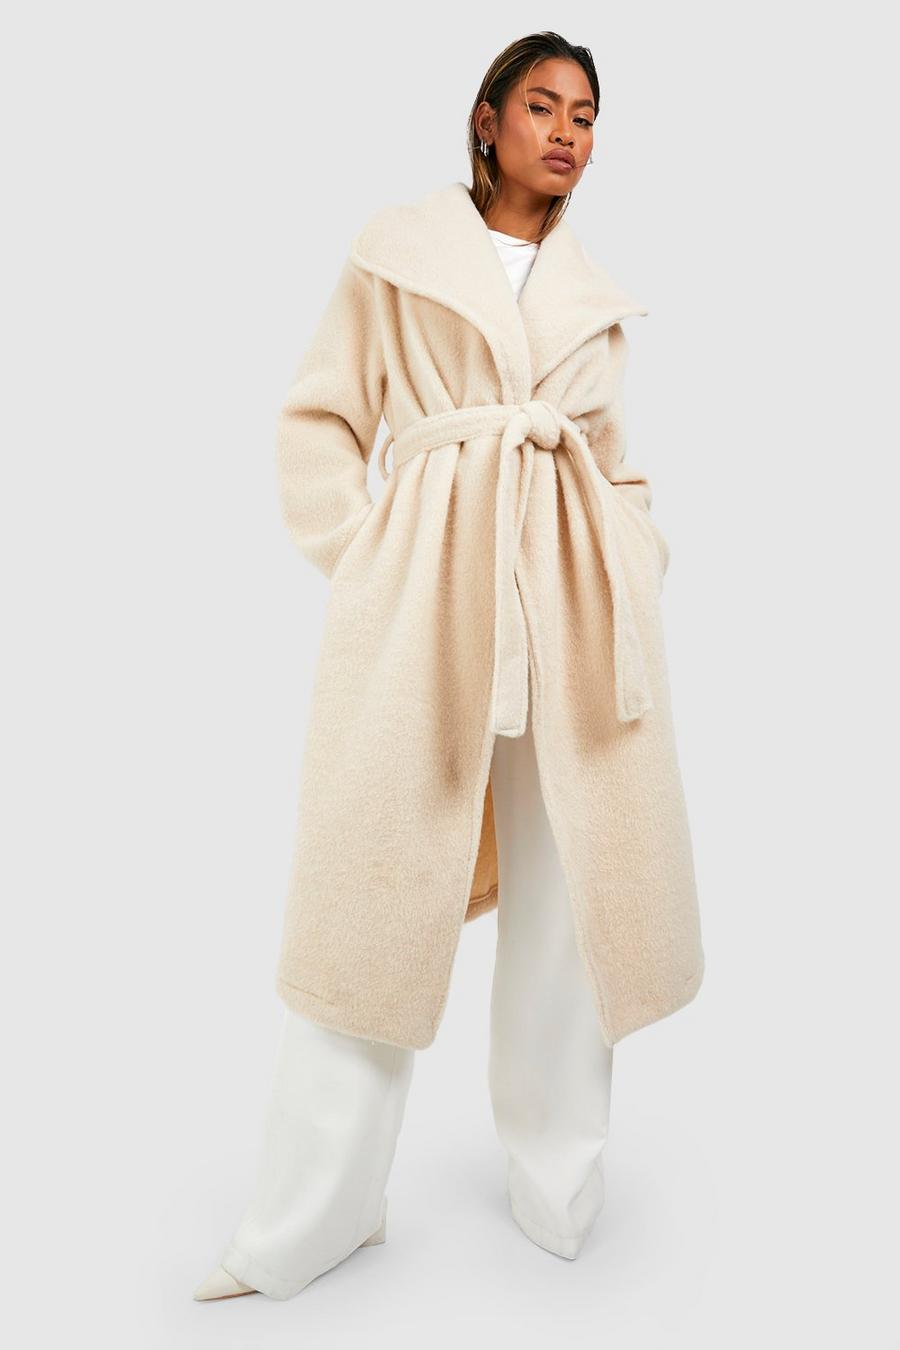 Cappotto maxi effetto lana con trama, colletto sciallato e cintura, Cream